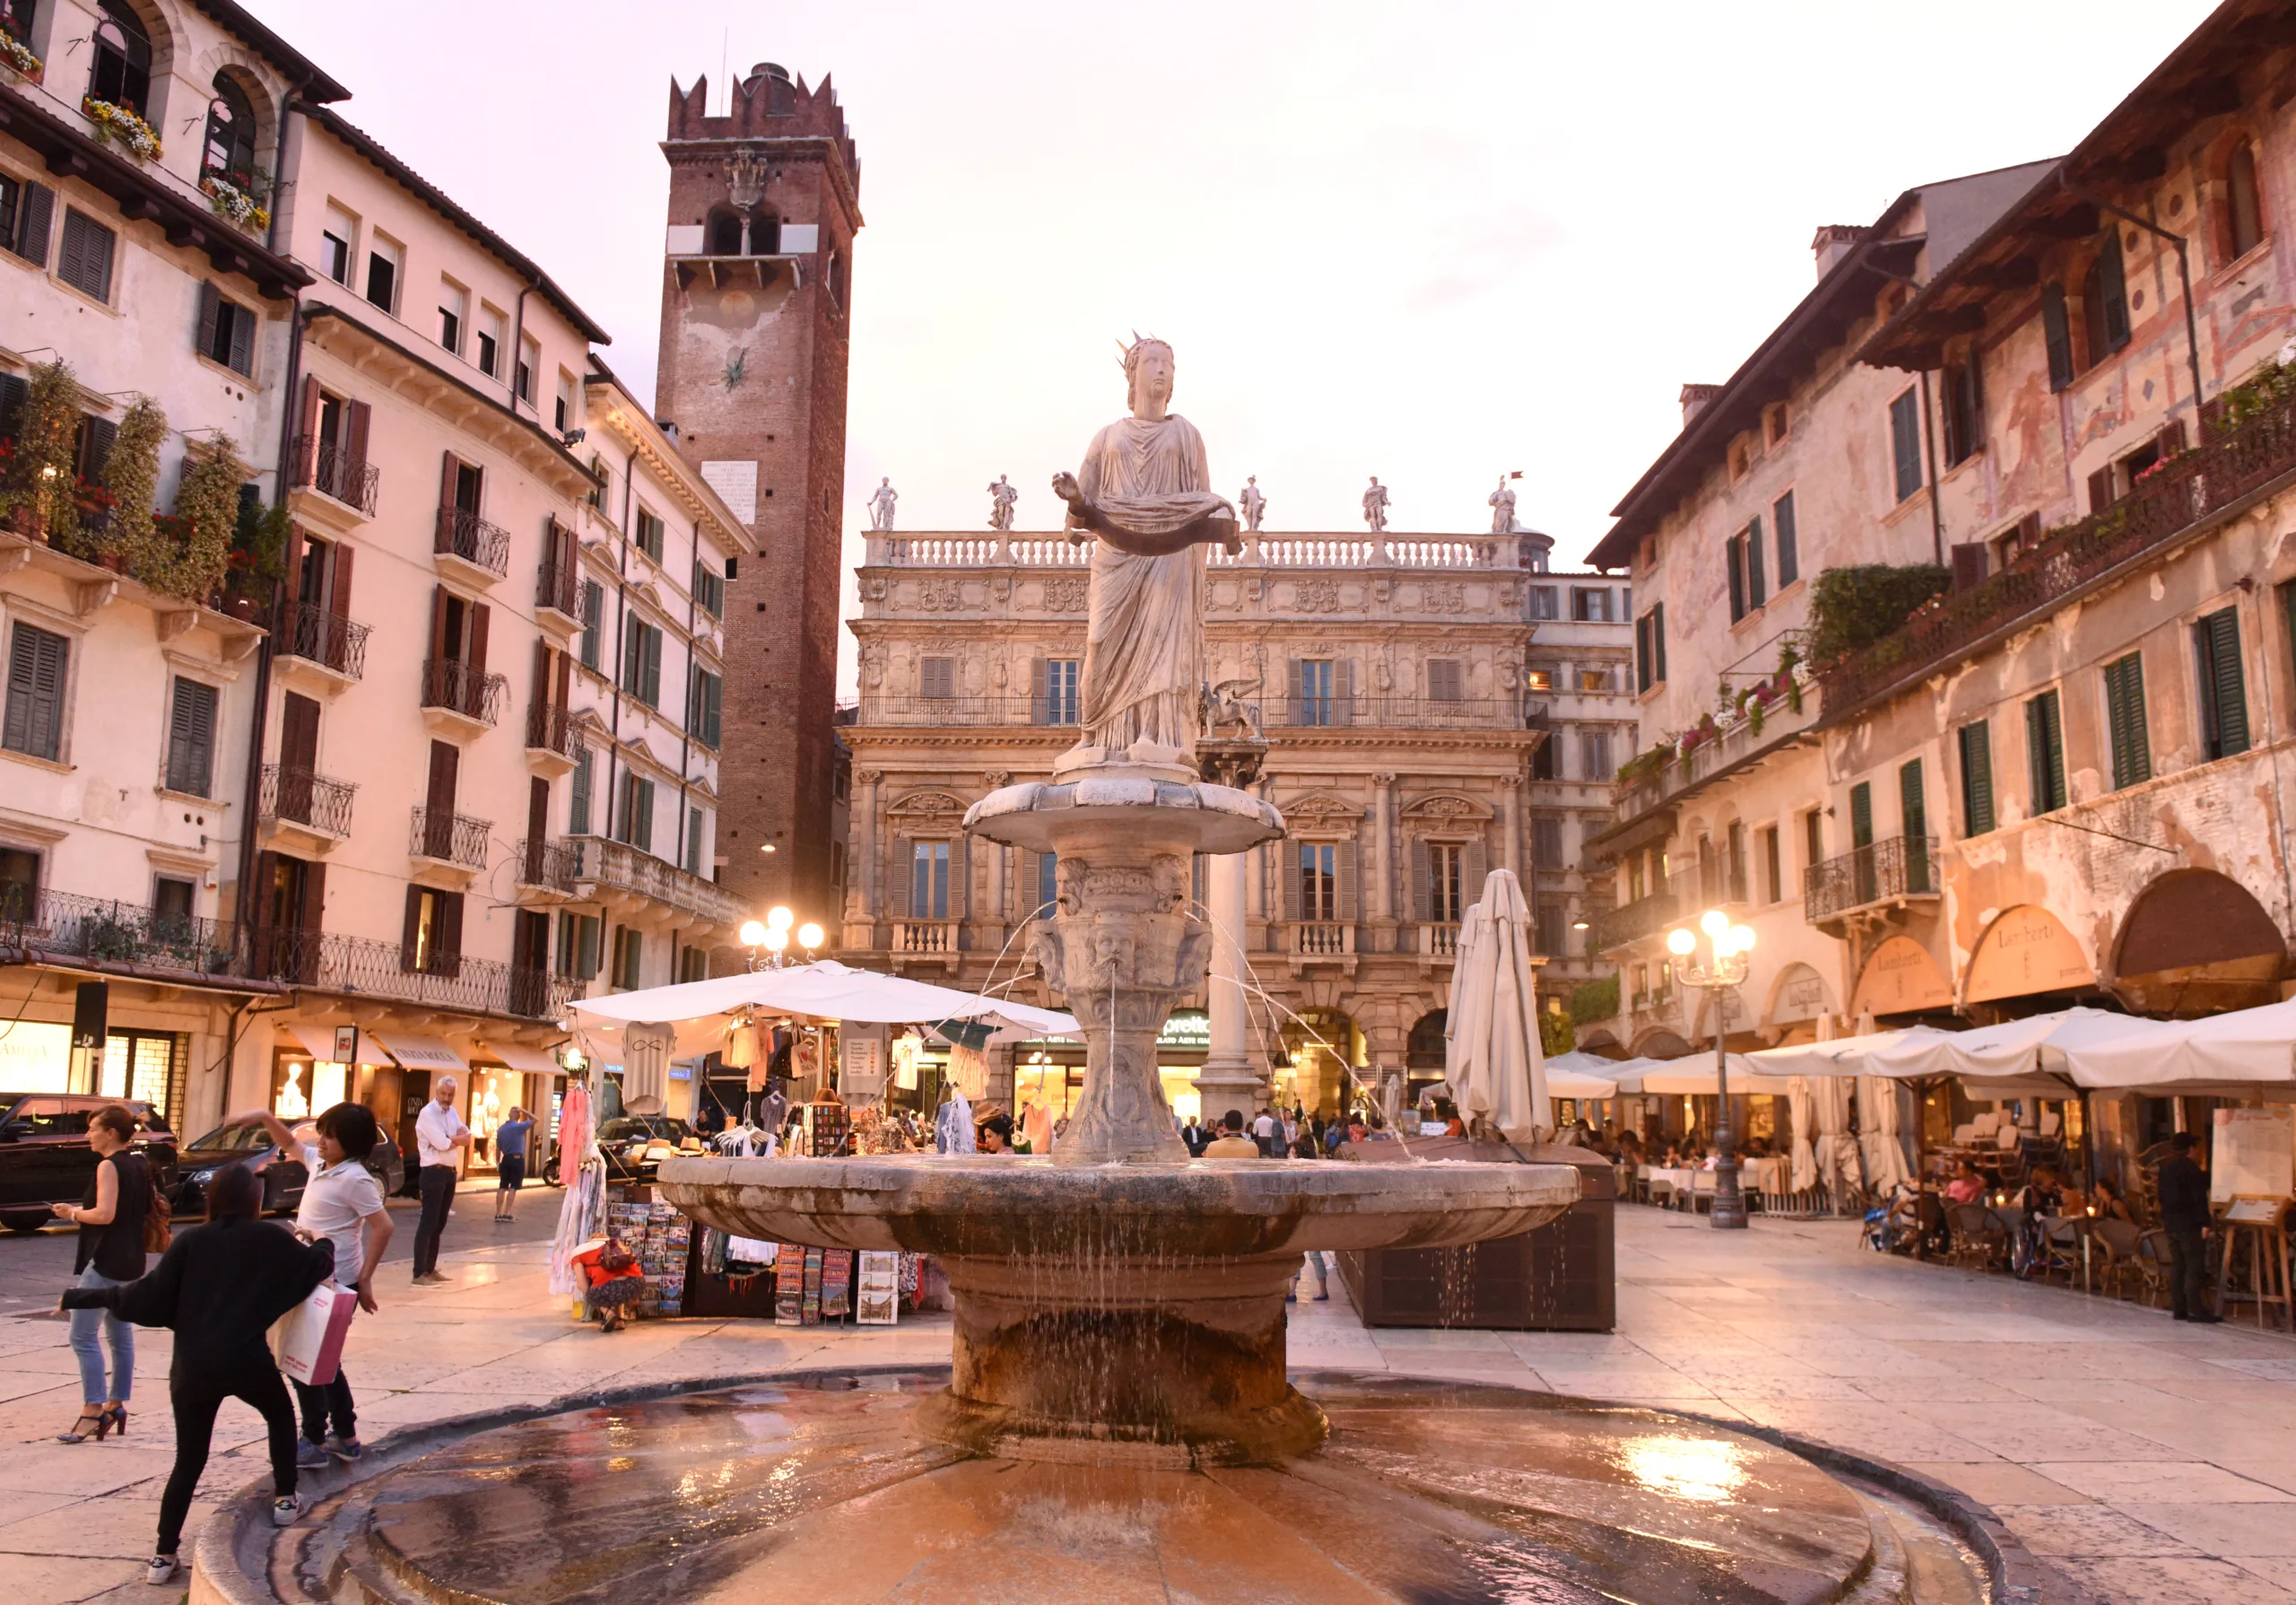 Fountain in the center of Piazza del Erbe